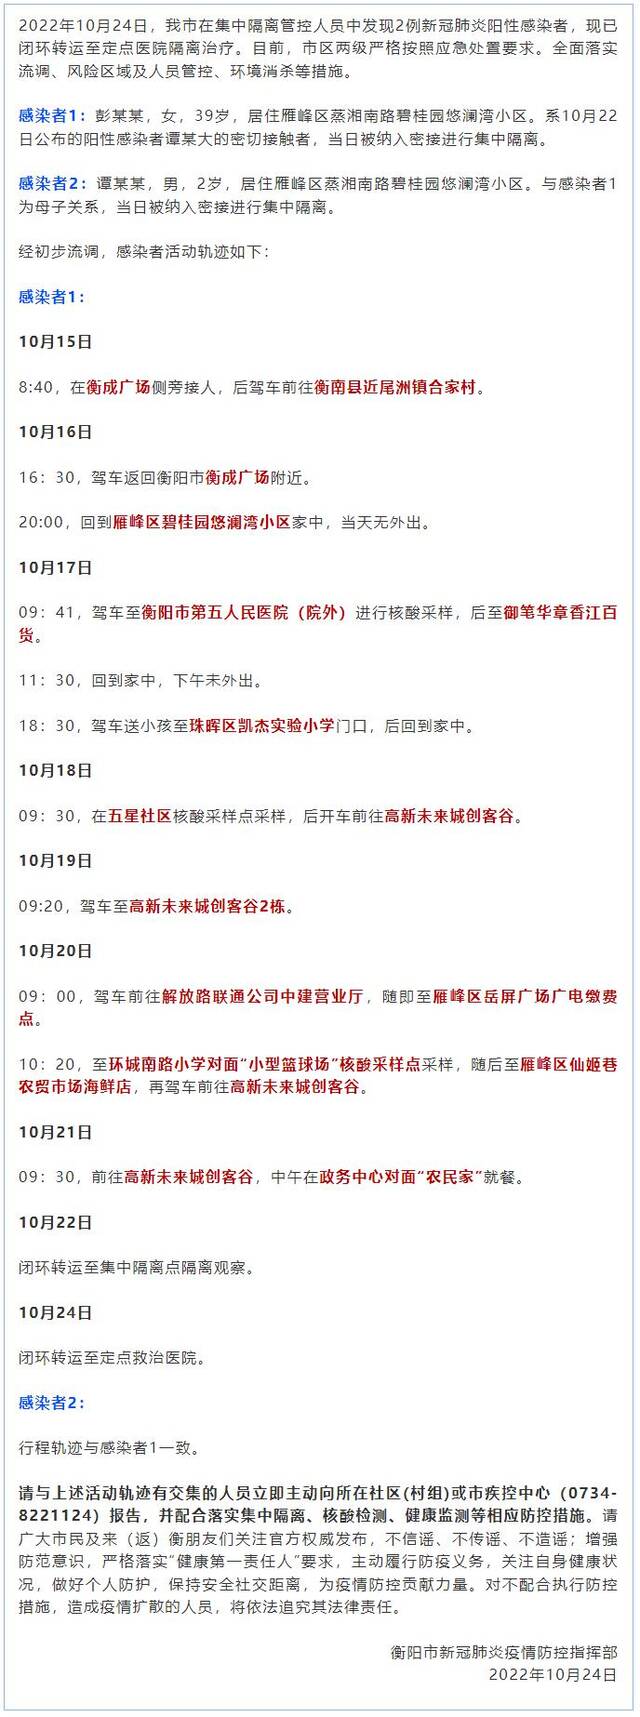 湖南衡阳发现2例新冠病毒阳性感染者 活动轨迹公布